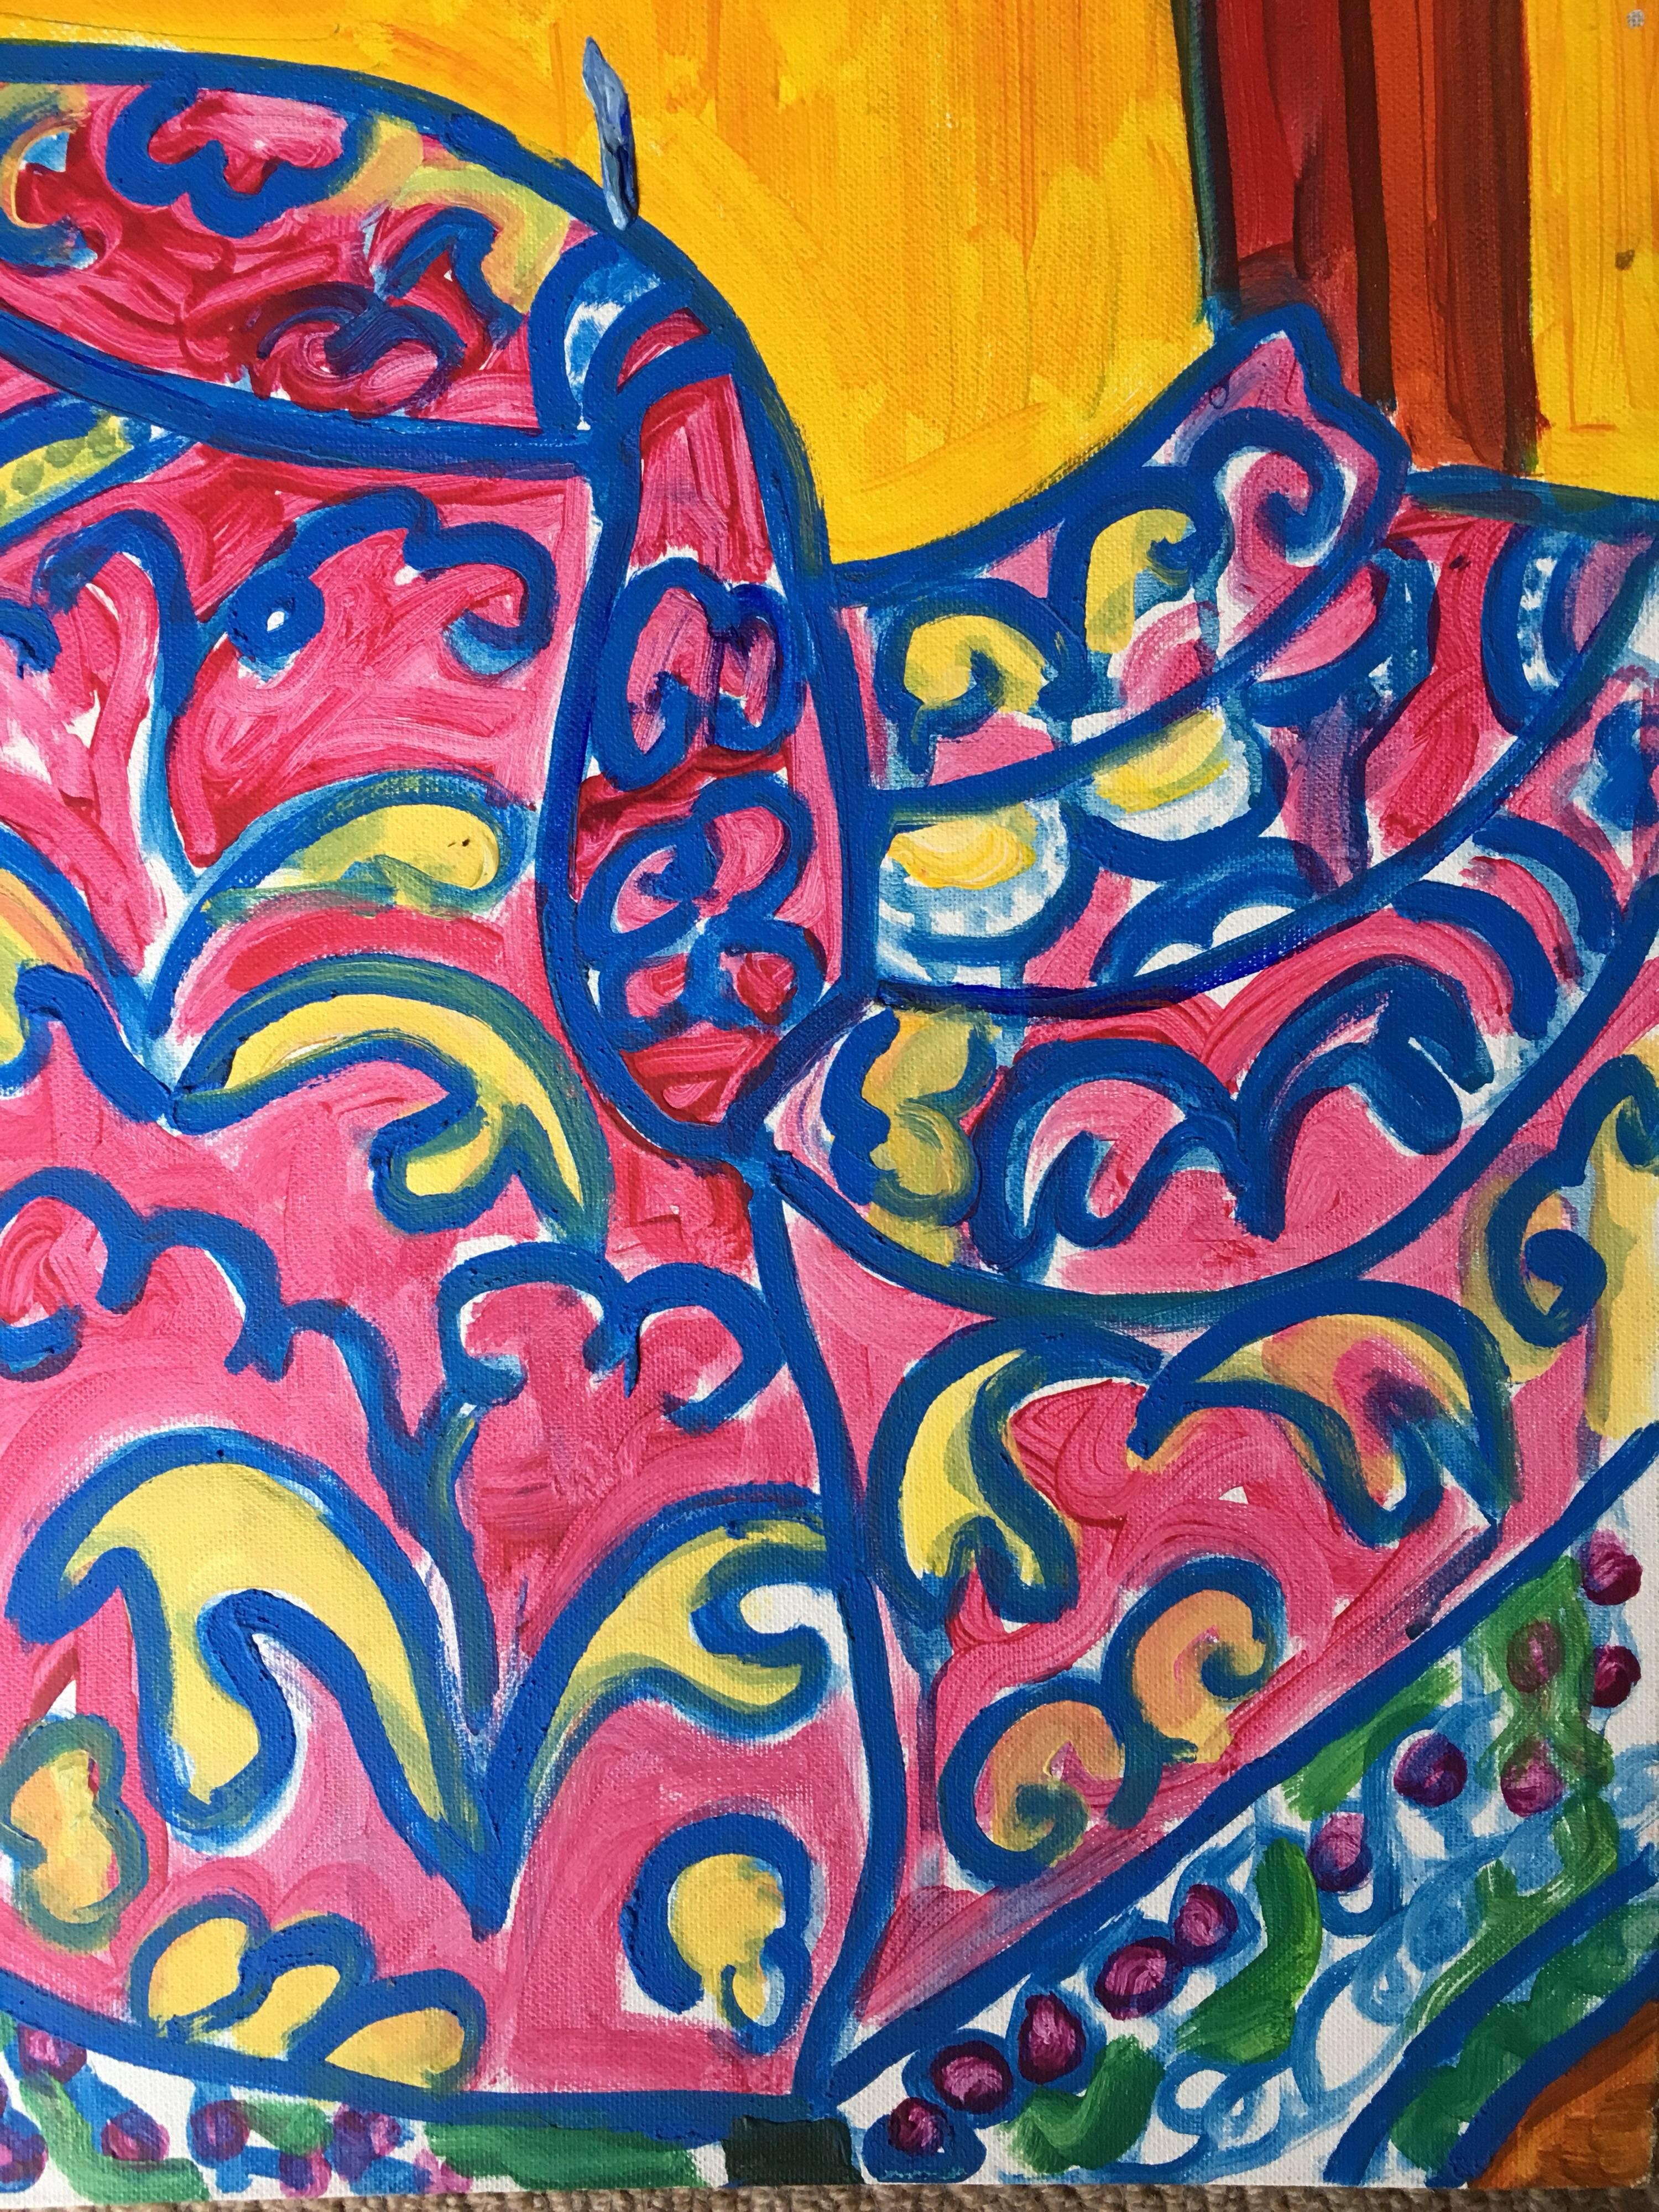 Abstraktes, farbenfrohes Ölgemälde eines Sessels (Impressionismus), Painting, von Pamela Cawley